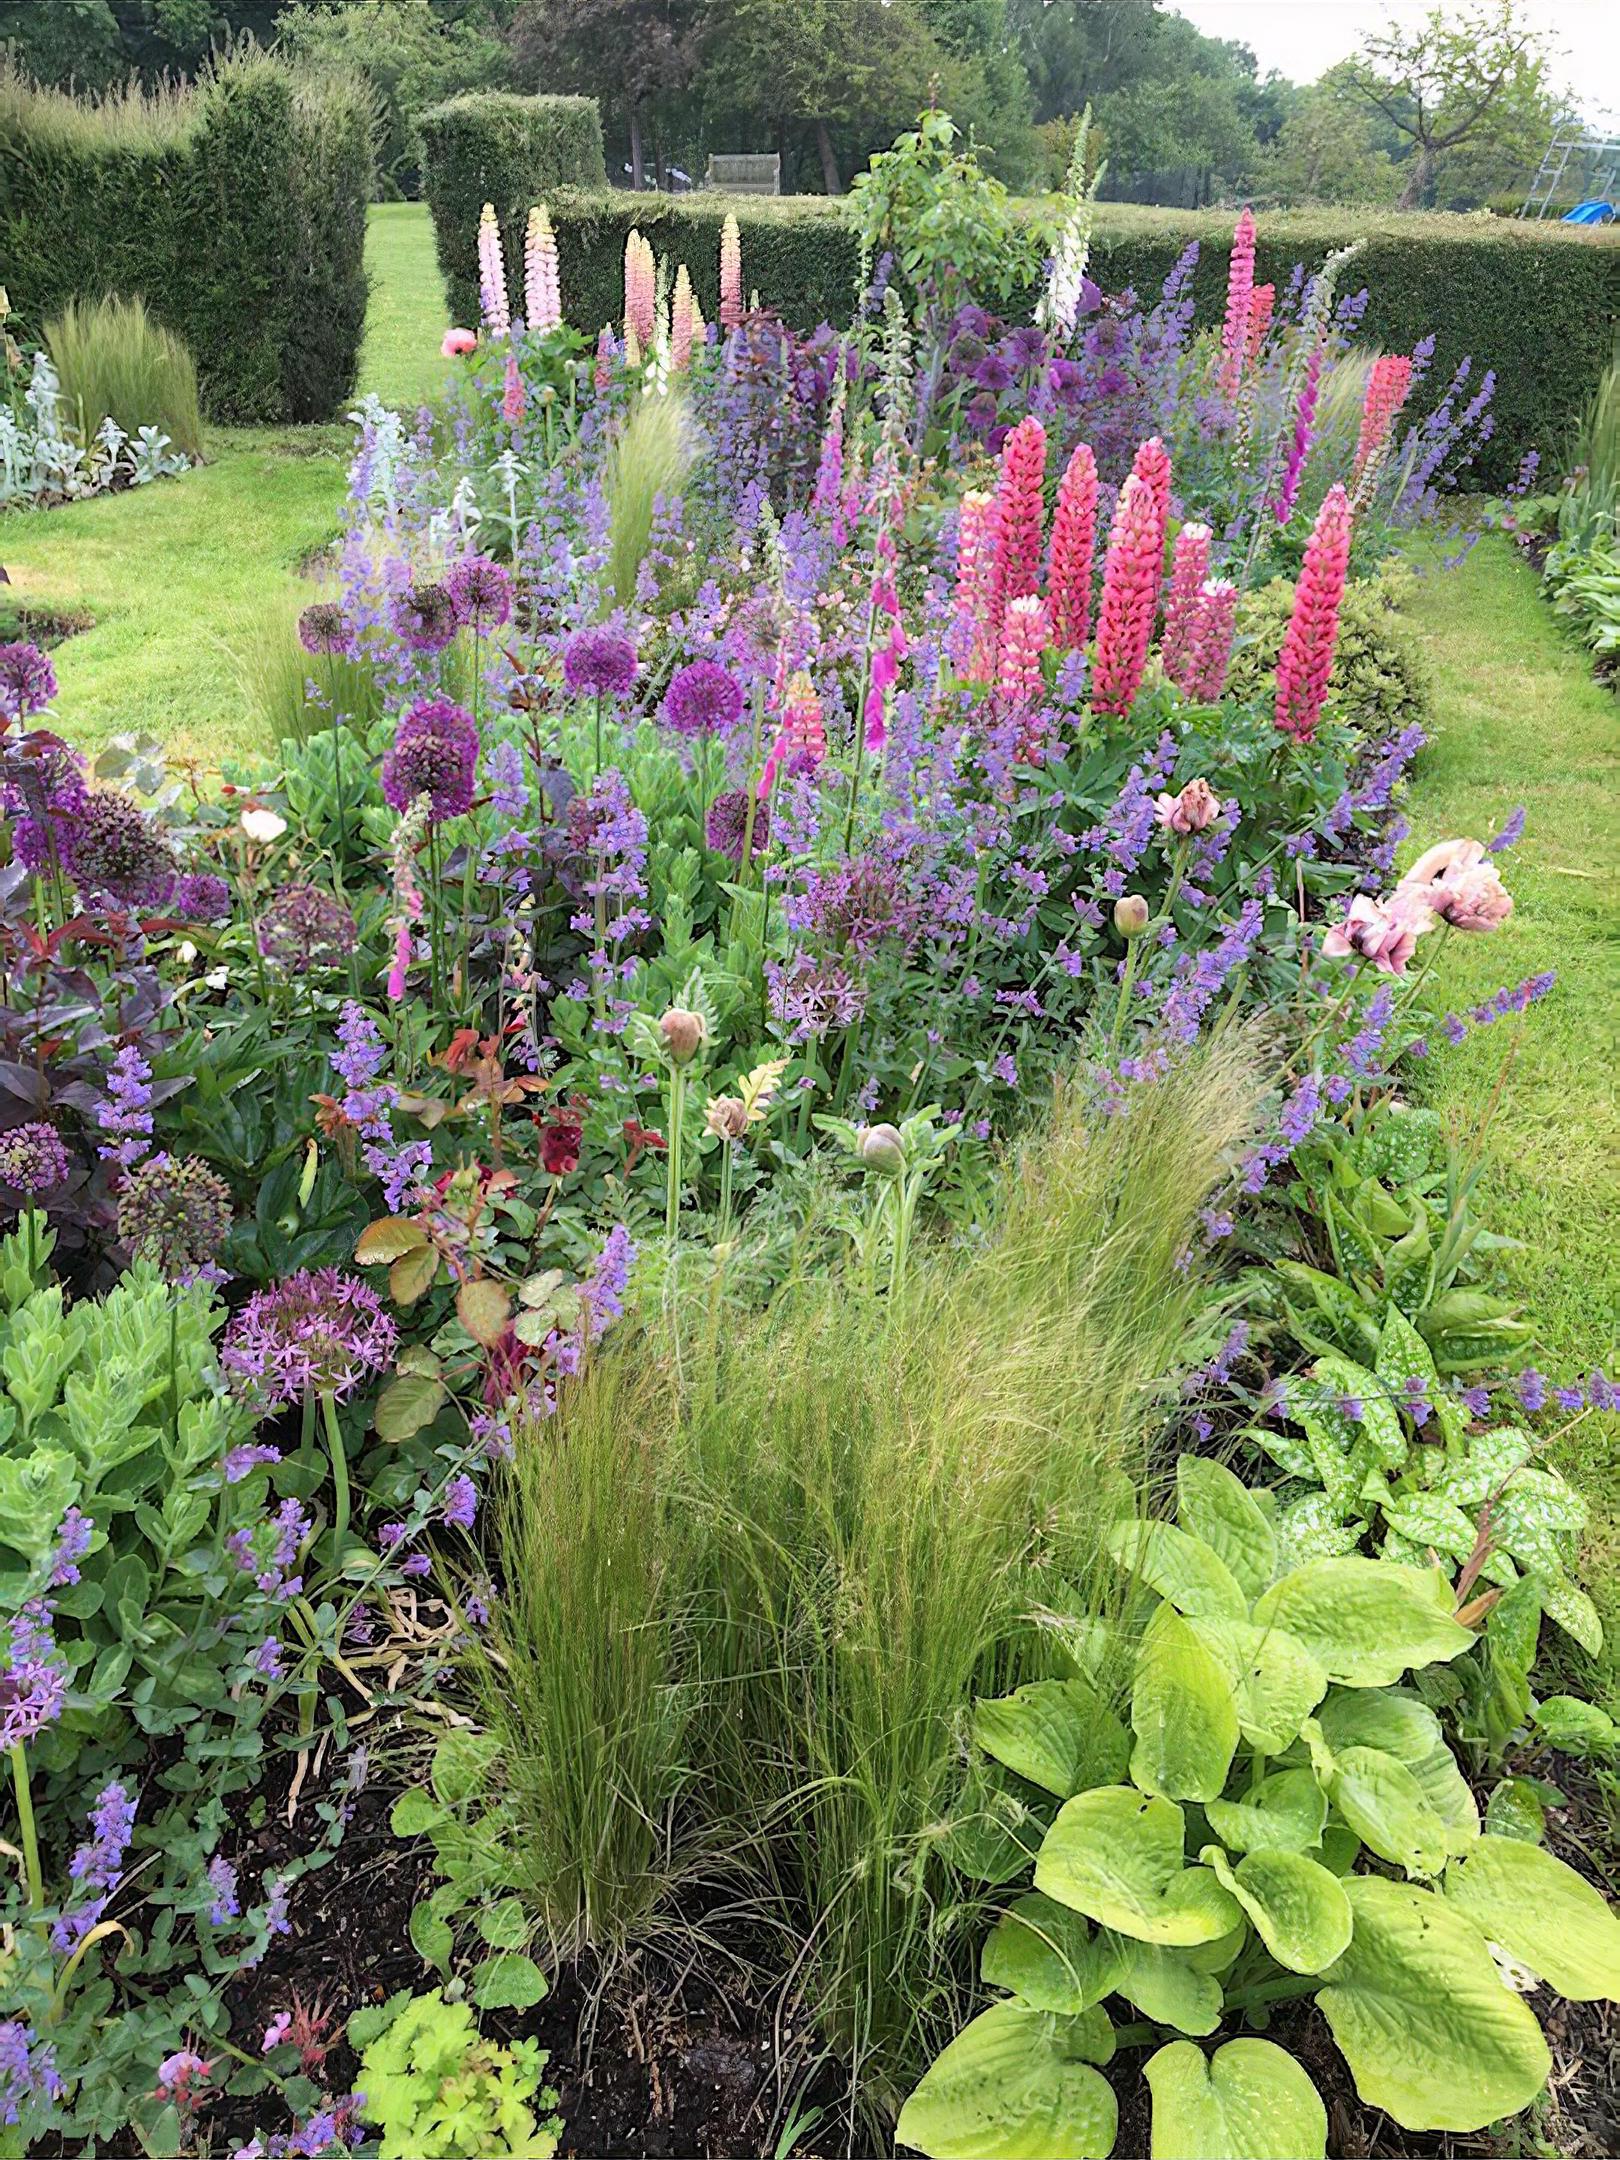 The Sundial Garden in Kent by garden designer Tara Dalton